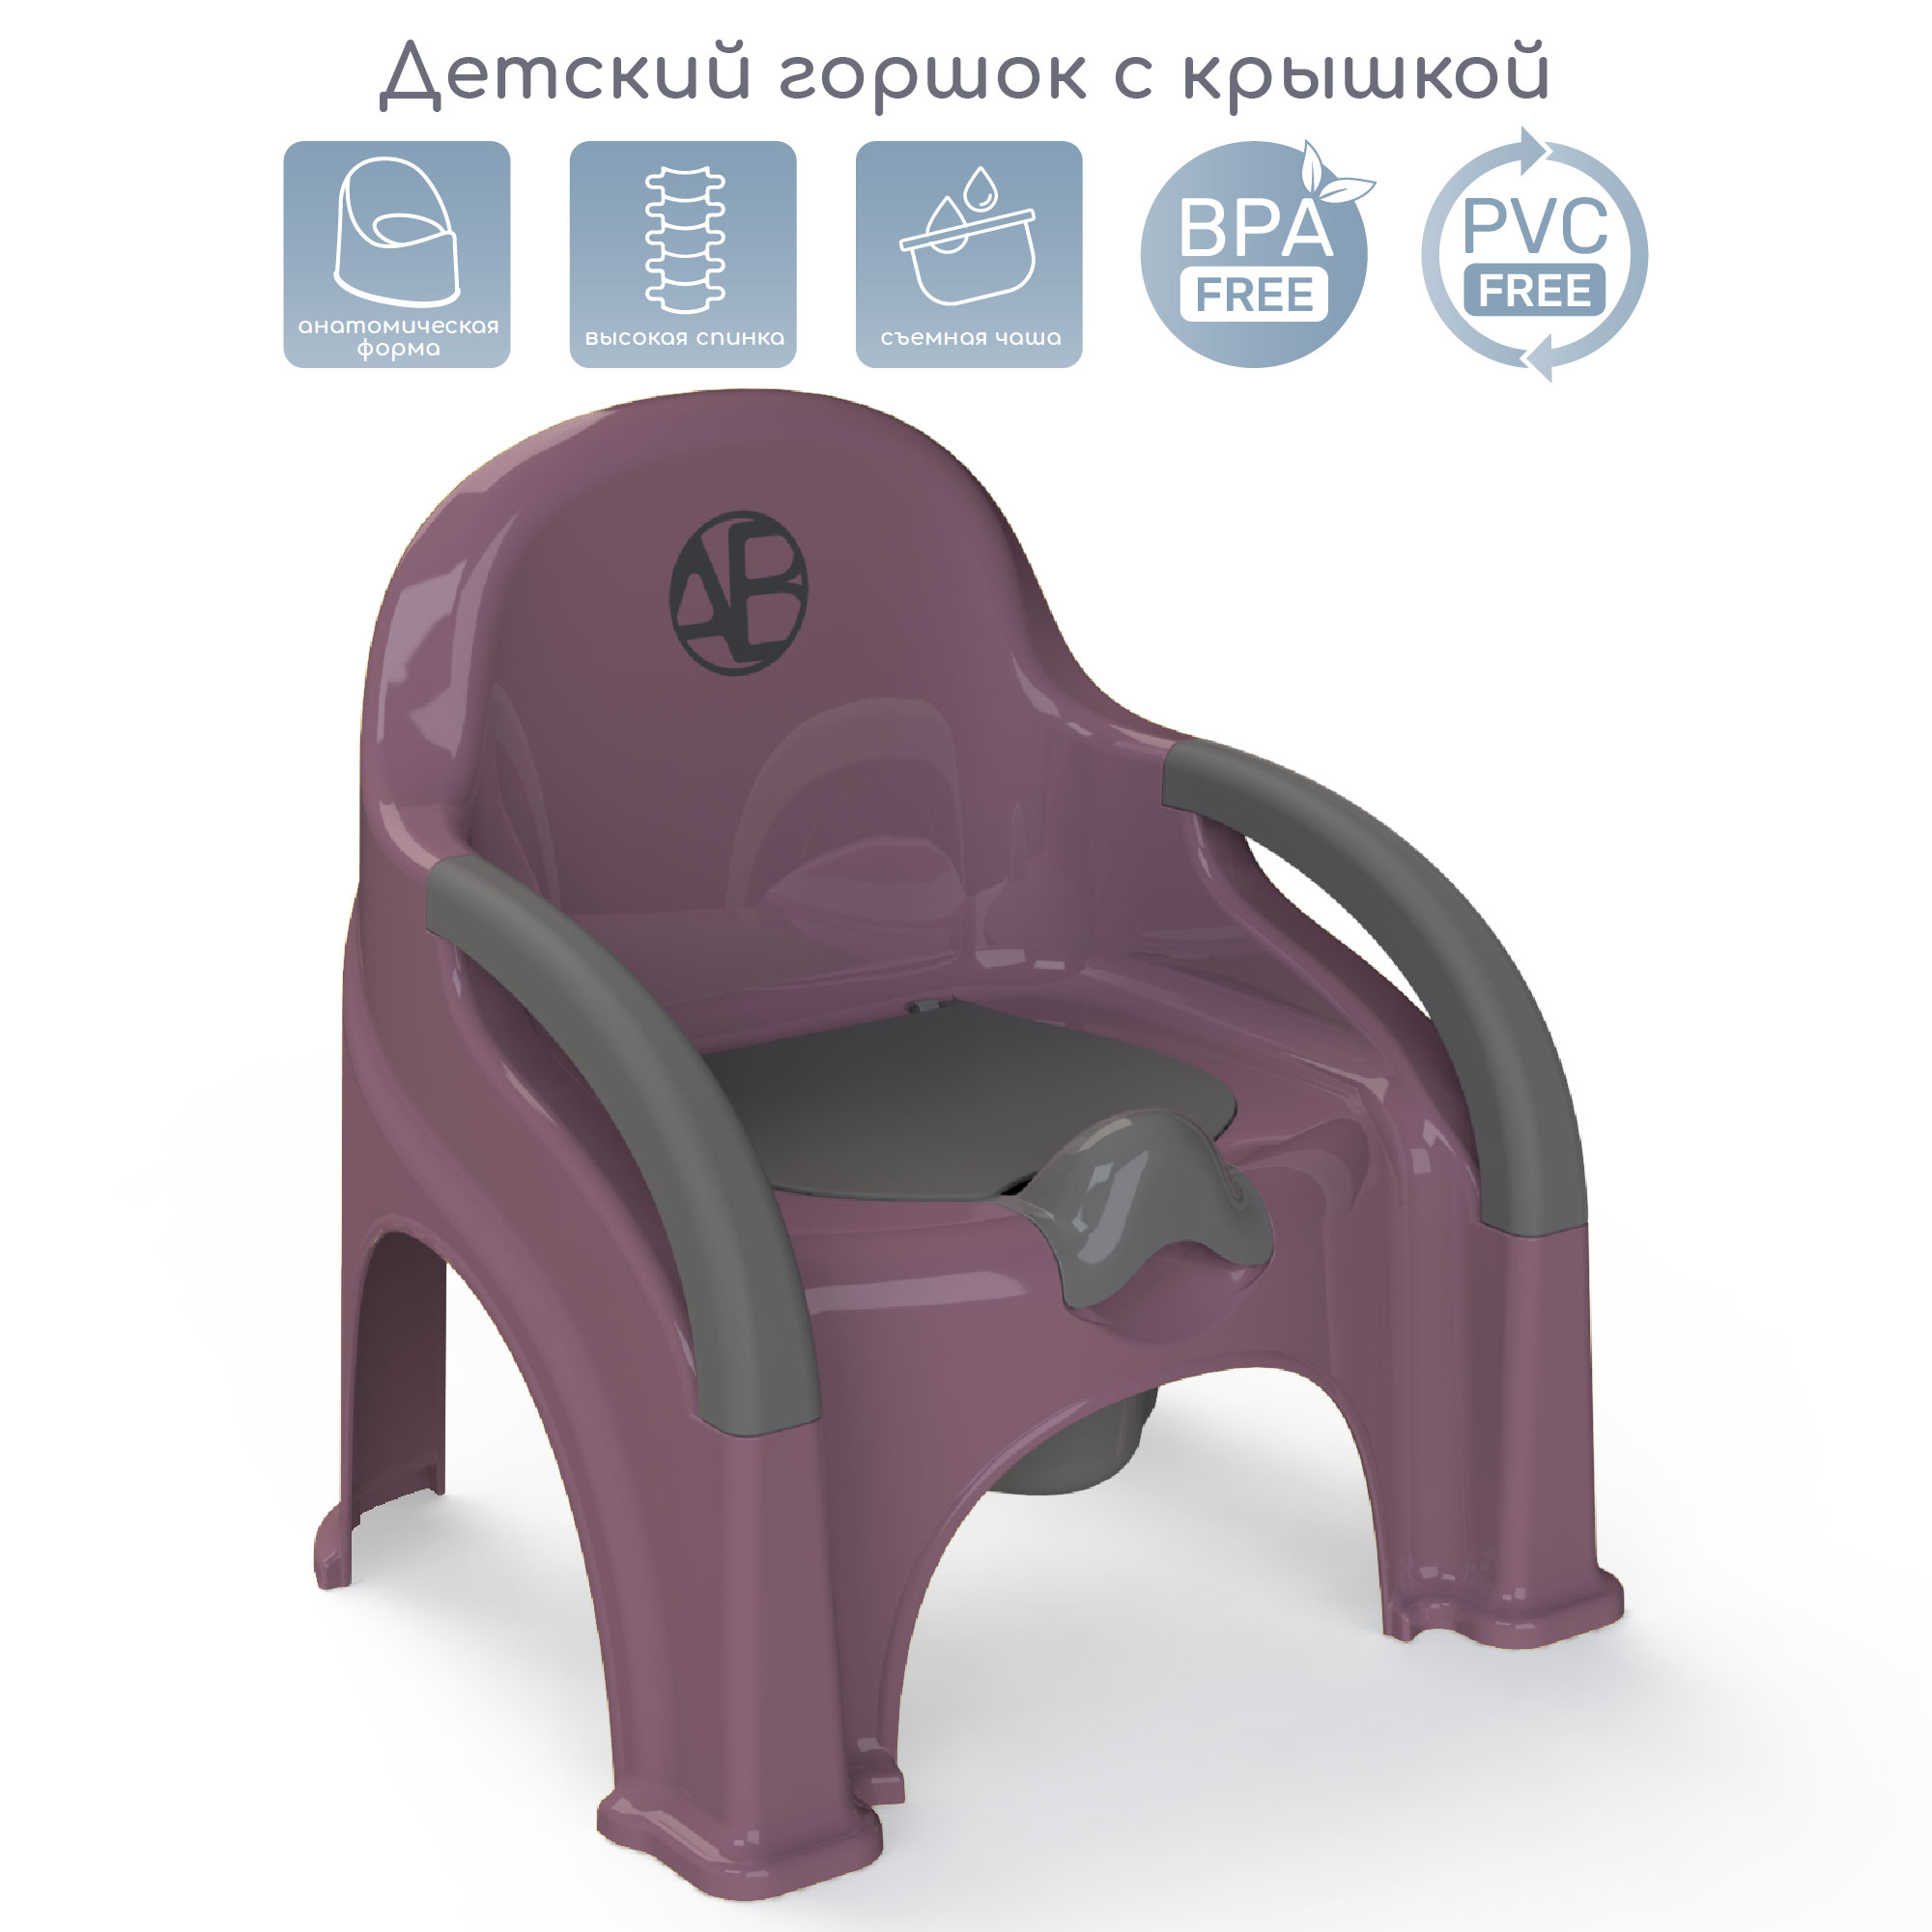 Горшок-стул Amarobaby Baby chair, фиолетовый, AB221105BCh/22 комплект одежды для новорожденных kari baby aw21b081 фиолетовый серый р 92